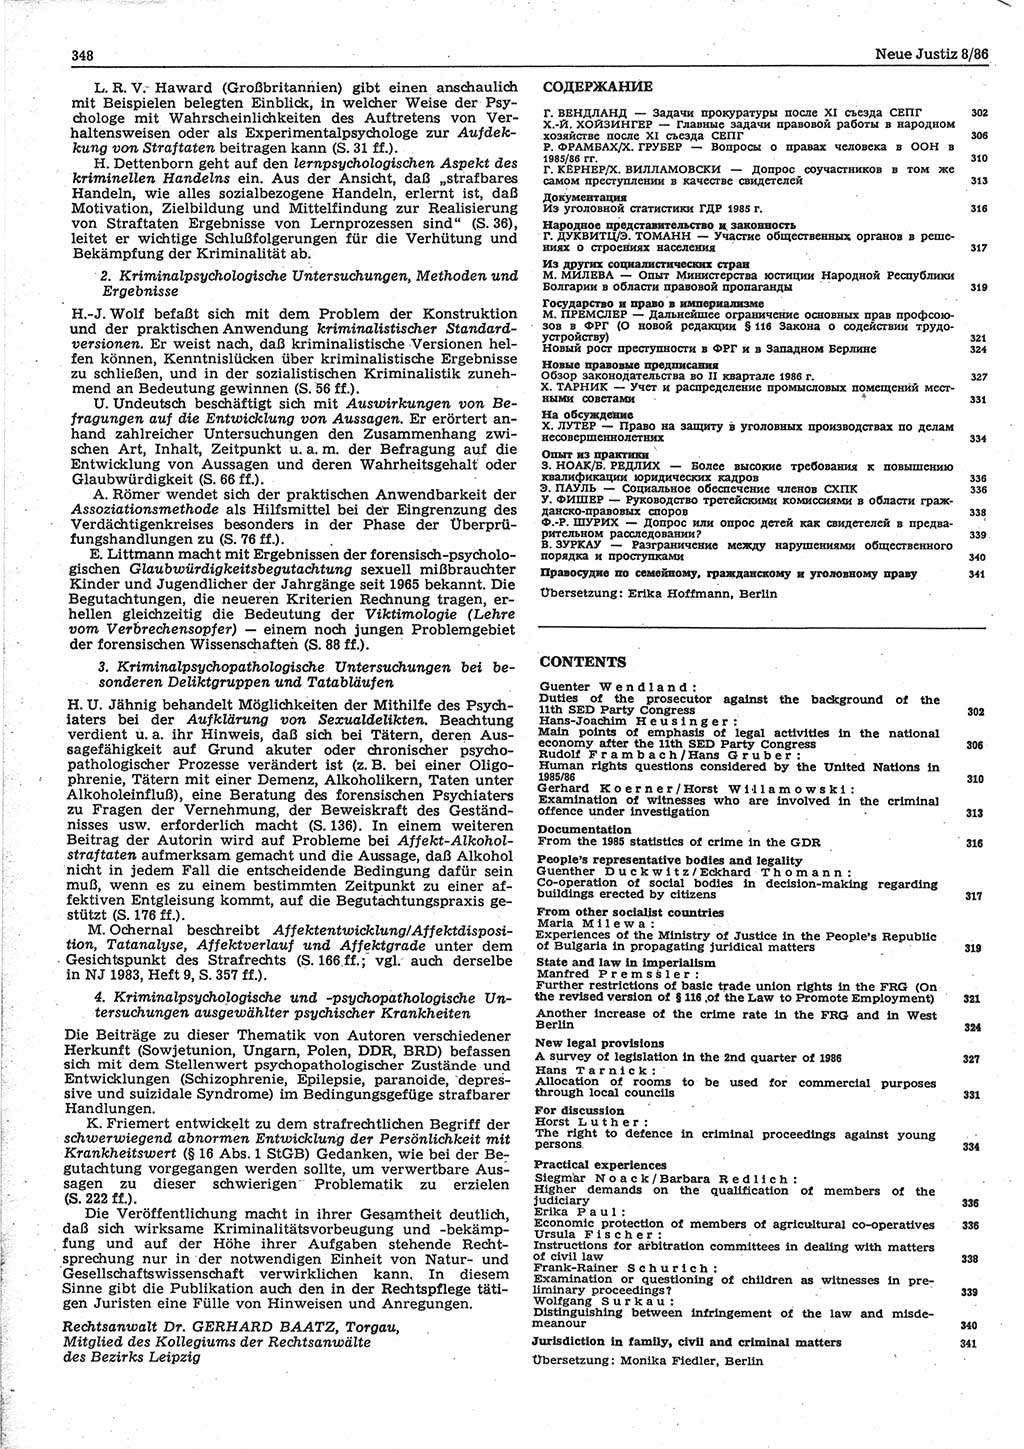 Neue Justiz (NJ), Zeitschrift für sozialistisches Recht und Gesetzlichkeit [Deutsche Demokratische Republik (DDR)], 40. Jahrgang 1986, Seite 348 (NJ DDR 1986, S. 348)